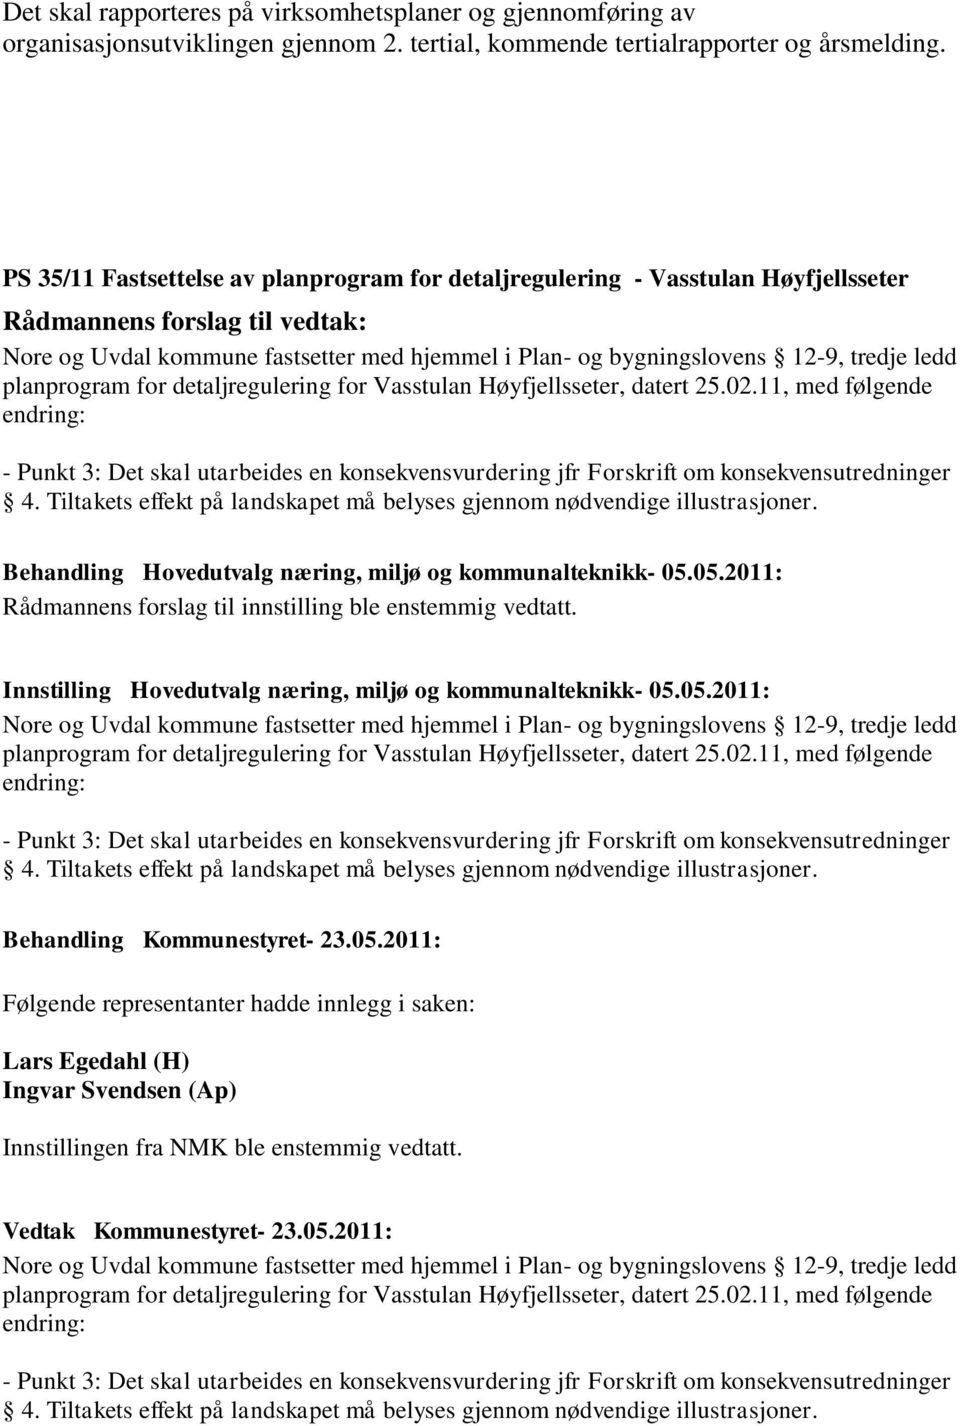 ledd planprogram for detaljregulering for Vasstulan Høyfjellsseter, datert 25.02.